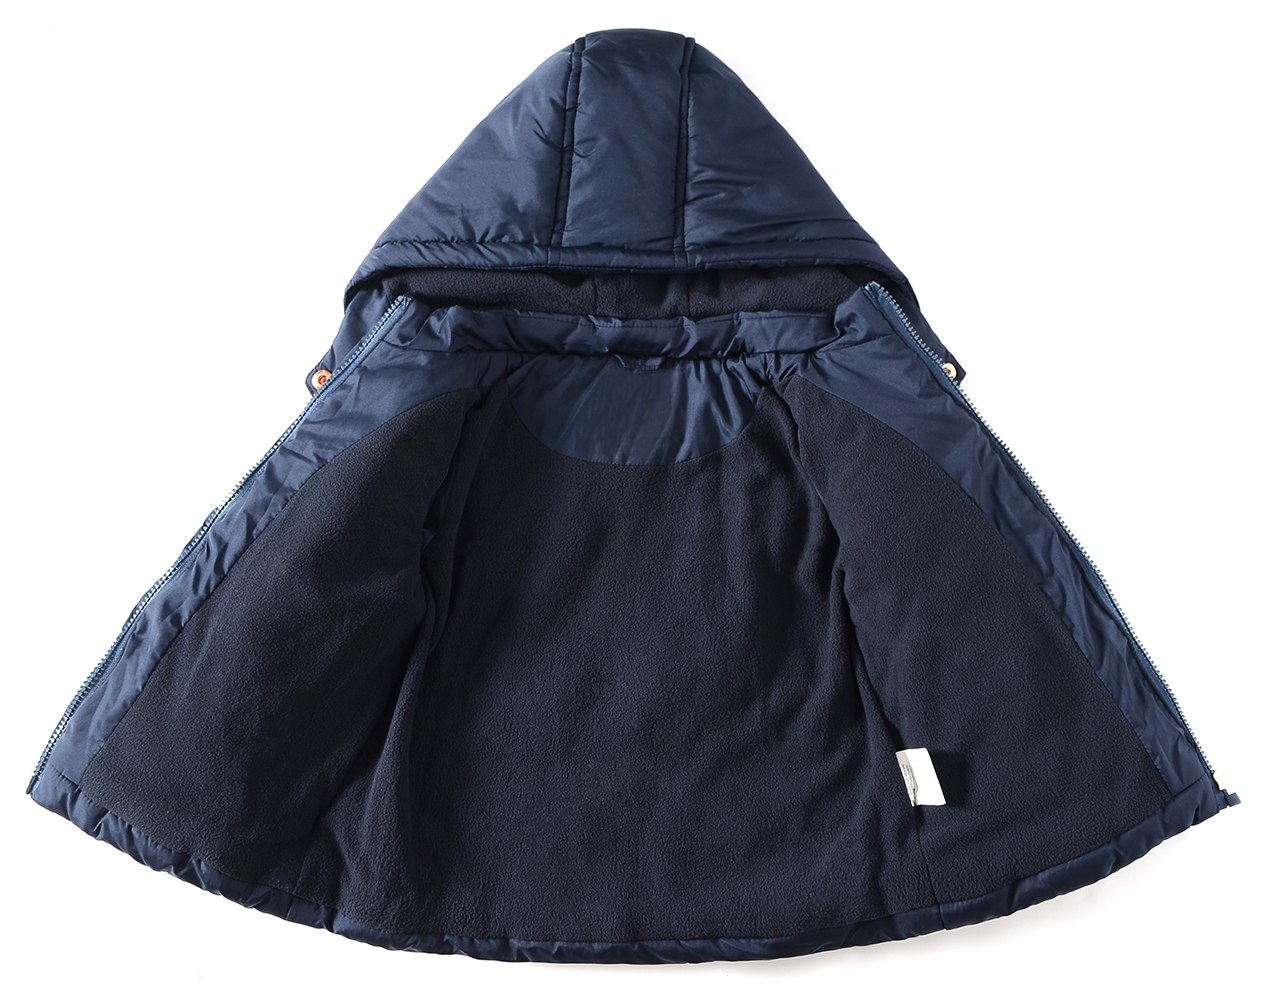 Little Girls Winter Puffer Jacket Warm Fleece Lined Hood Coat